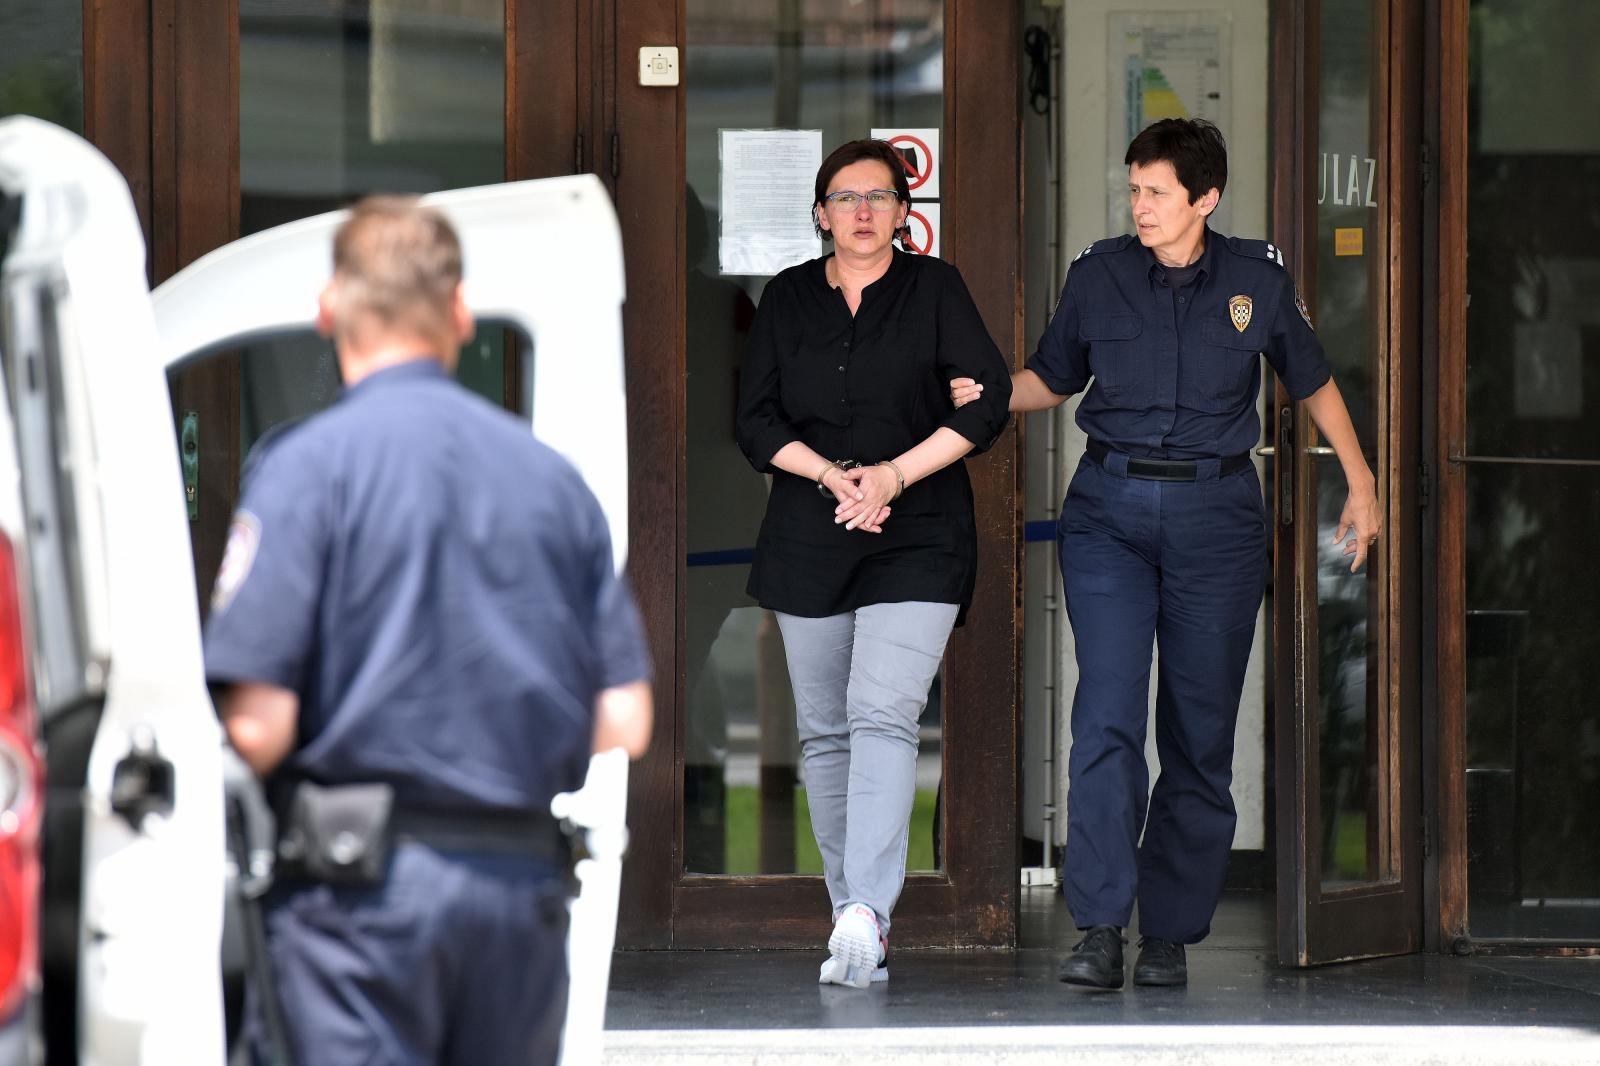 12.07.2019., Varazdin- Smiljanu Srnec odvode u pritvor nakon odrzanog rocista.
Photo: Vjeran Zganec Rogulja/PIXSELL